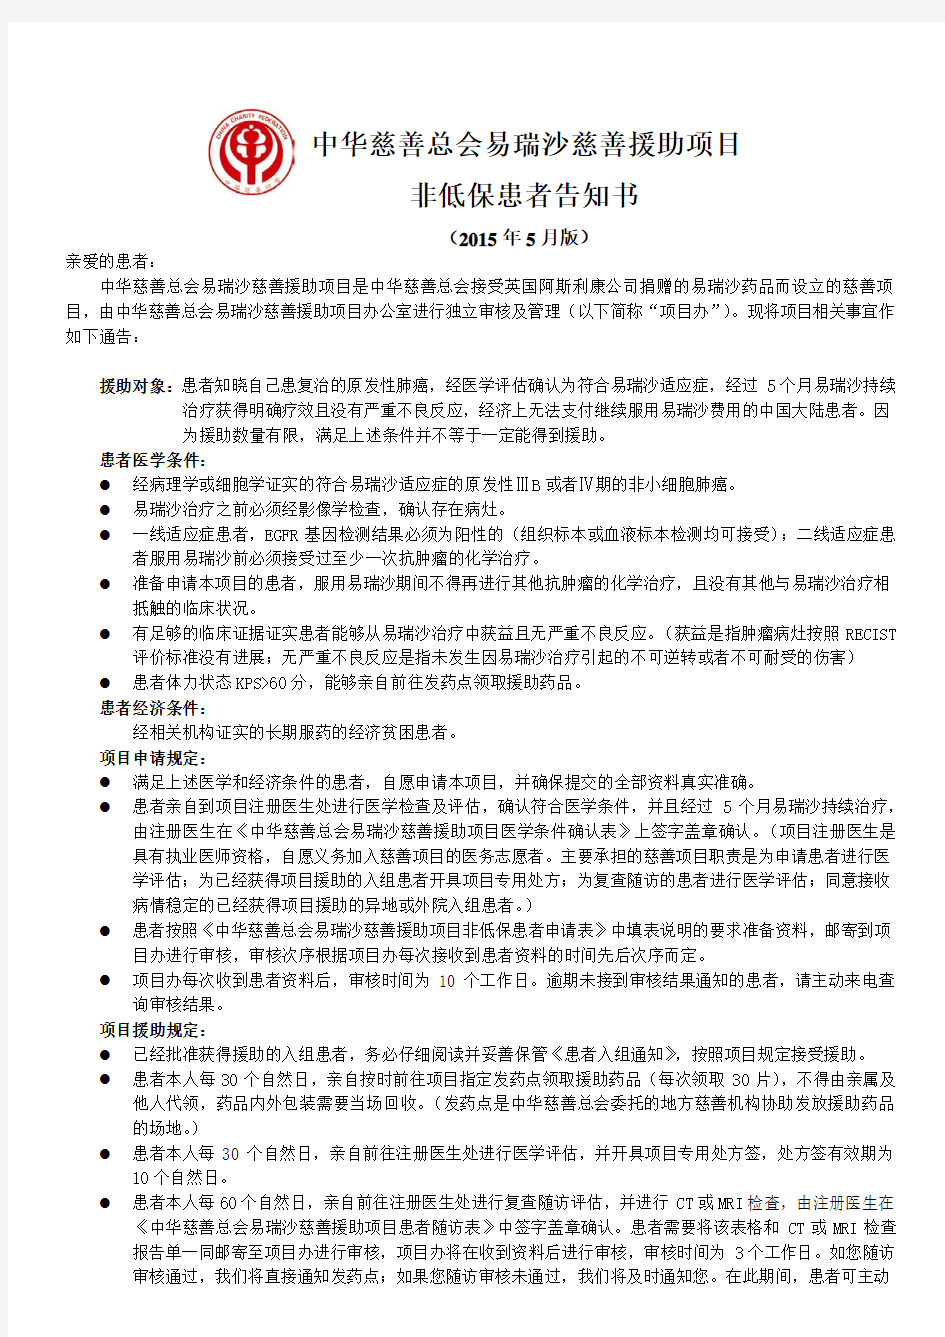 中华慈善总会易瑞沙慈善援助项目非低保患者申请表